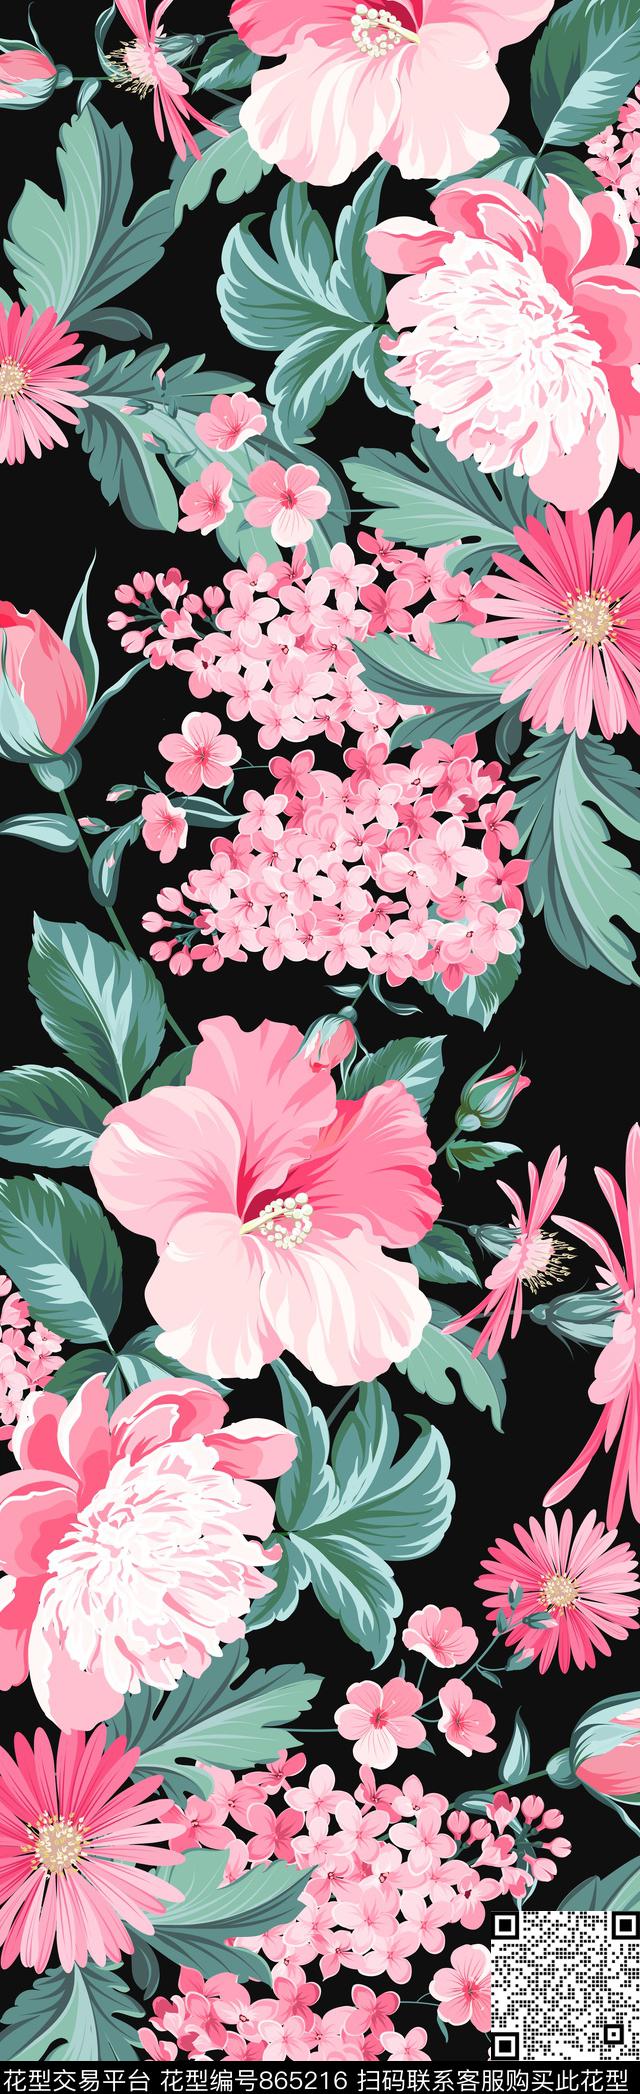 7.jpg - 865216 - 花朵 花卉 长巾 - 传统印花花型 － 长巾花型设计 － 瓦栏